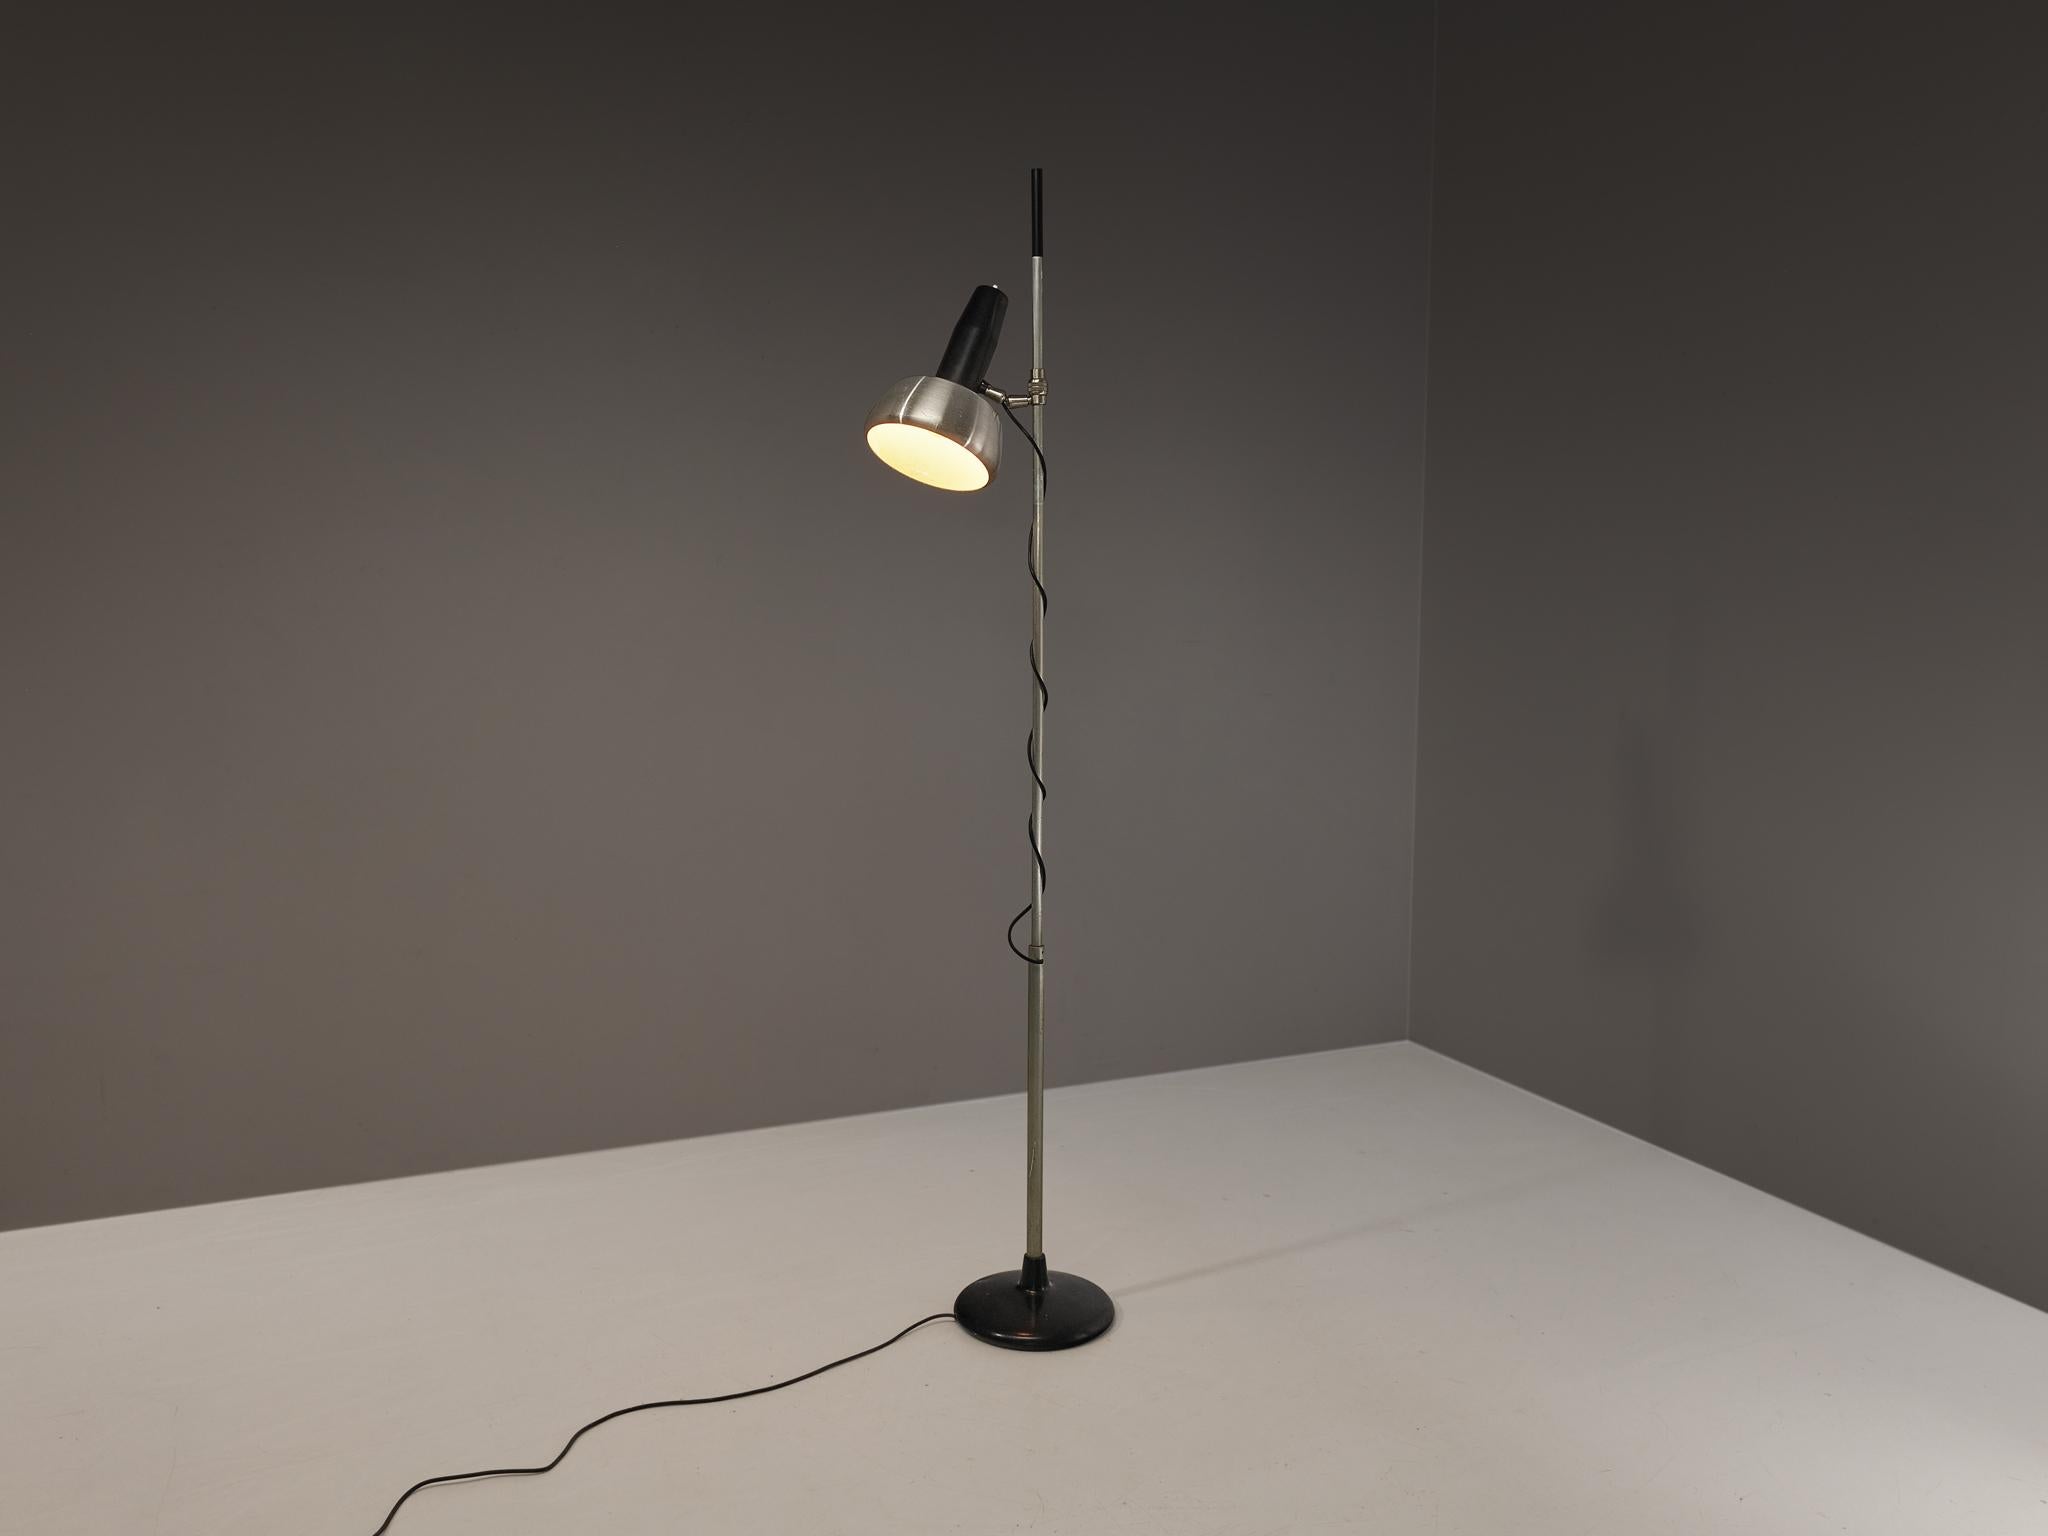 Oscar Torlasco pour Lumi, lampadaire modèle '721', chrome, aluminium, Italie, années 1950

Lumi était l'une des entreprises de design/One les plus innovantes en matière d'éclairage en Italie au milieu du siècle dernier. Ce lampadaire se caractérise